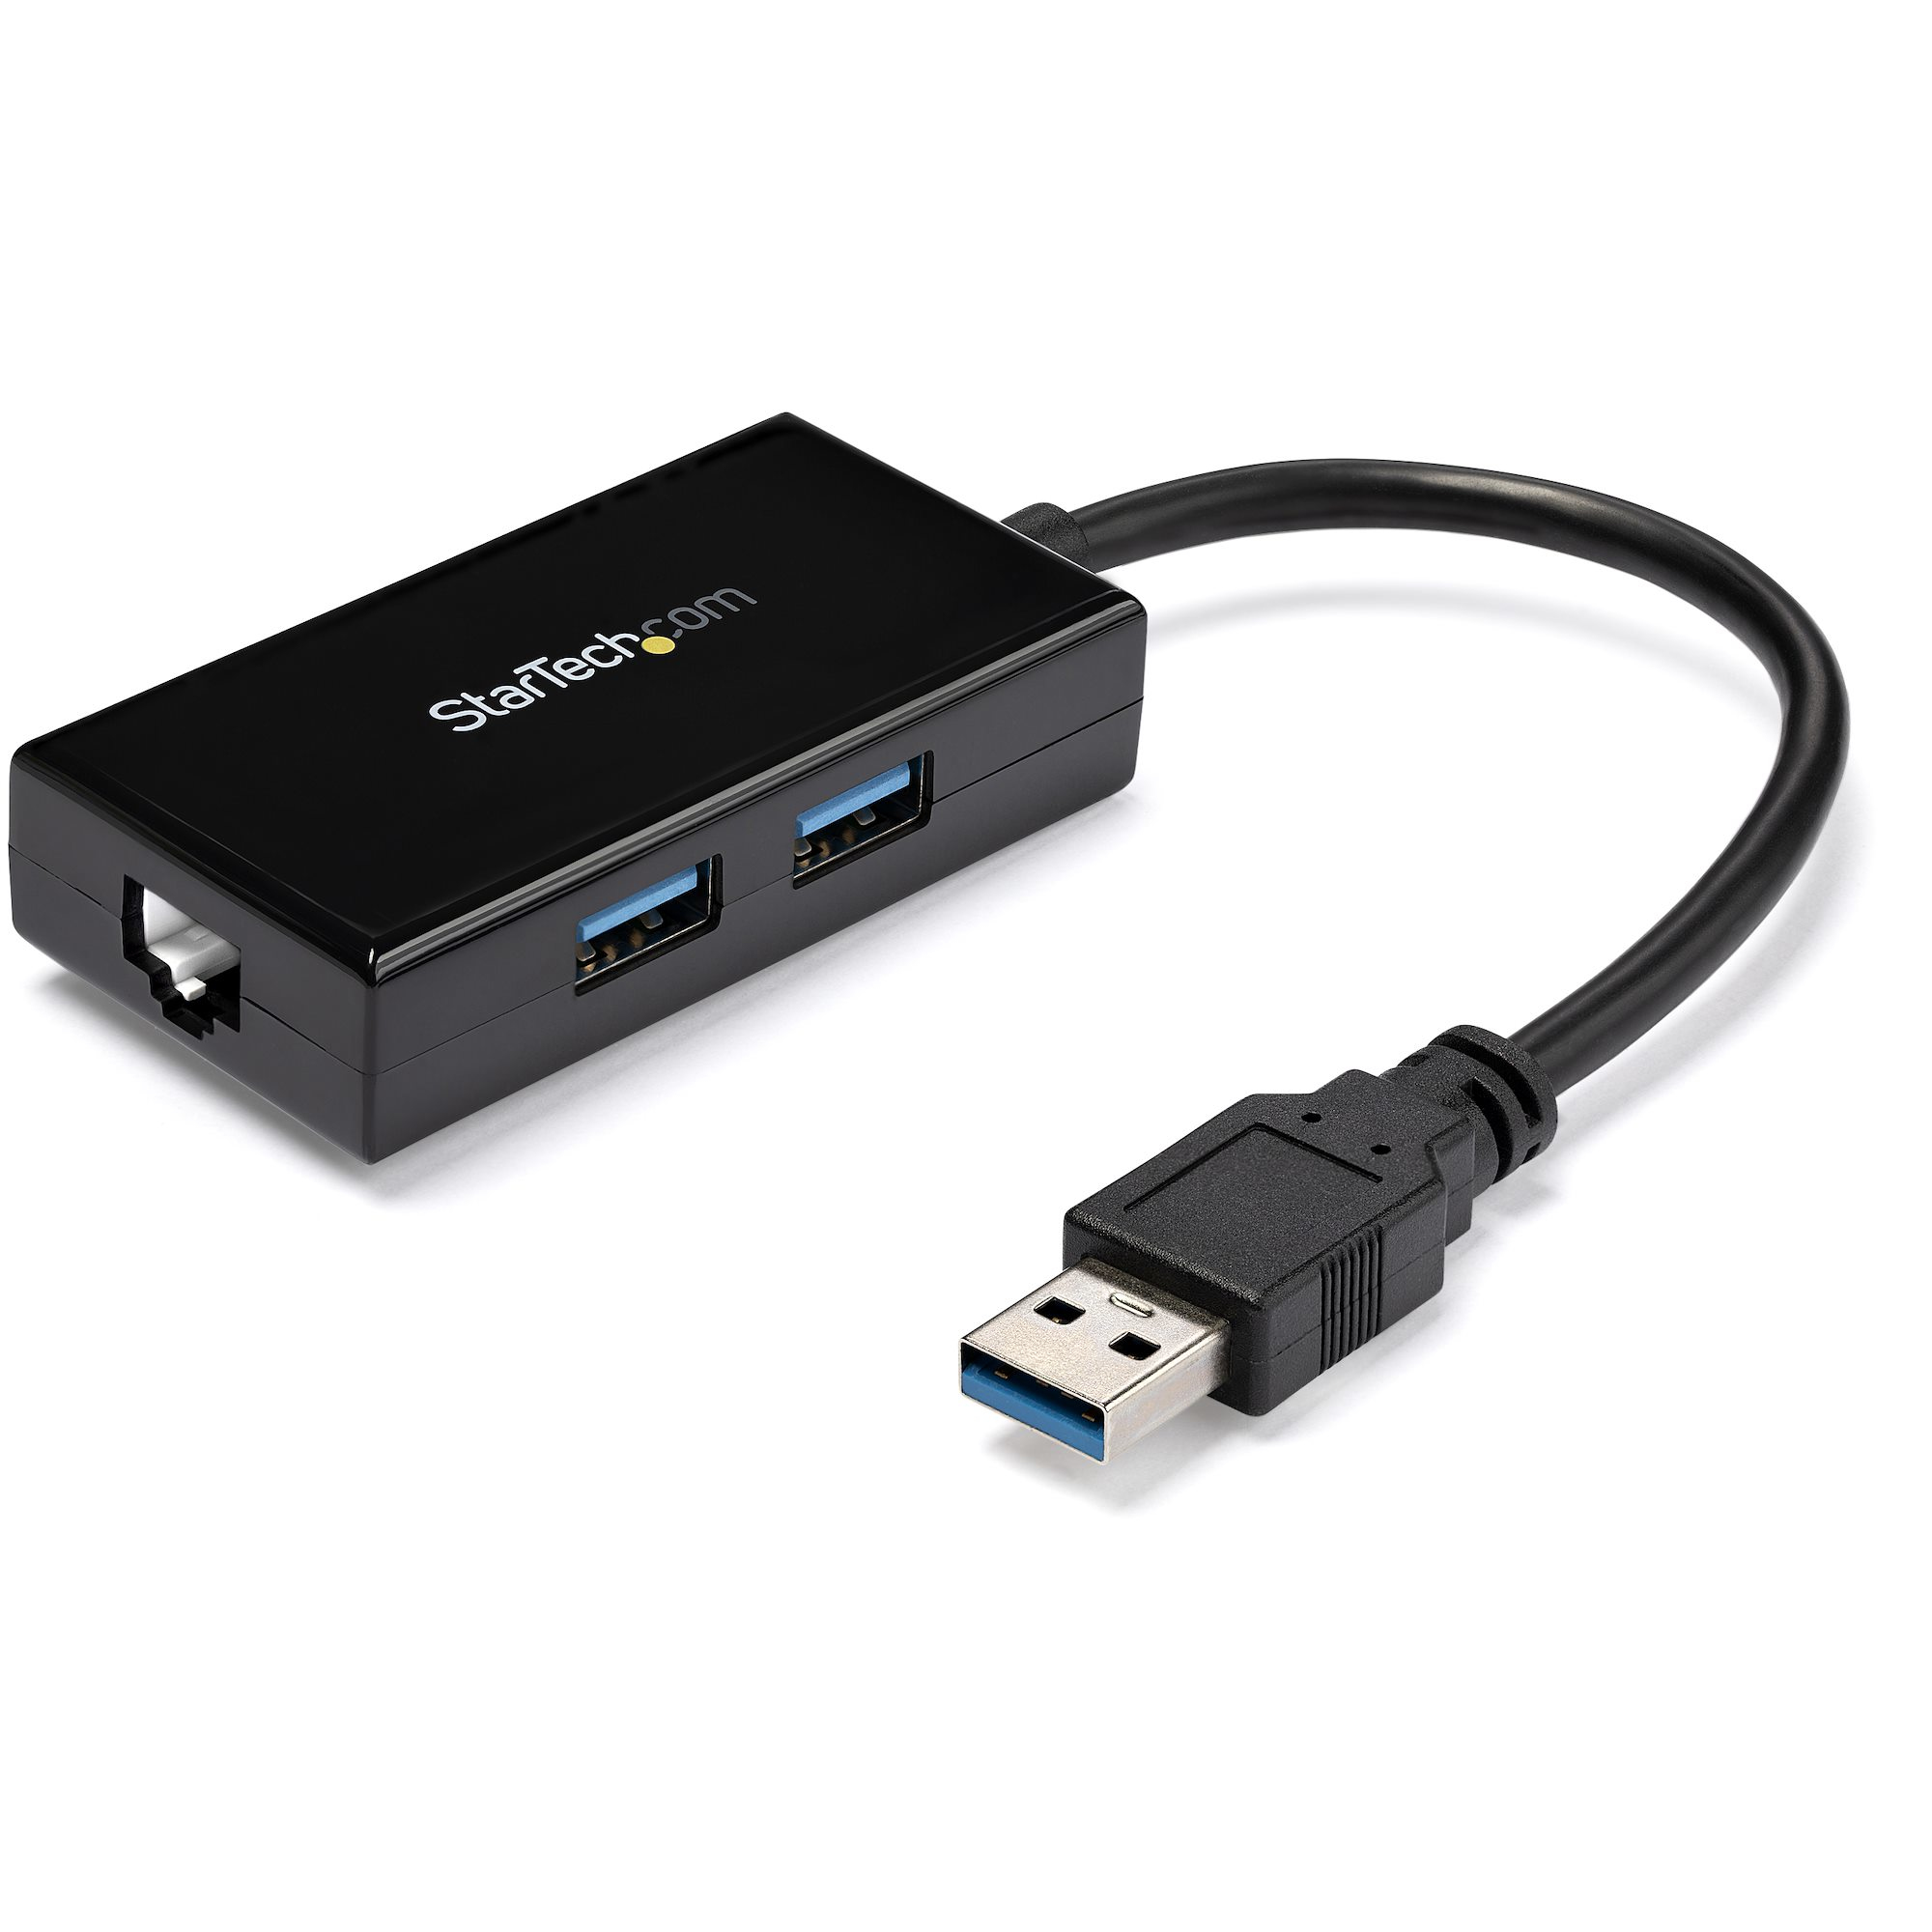 Sieťový adaptér StarTech.com USB 3.0 na gigabitový sieťový adaptér s 2-portovým rozbočovačom USB - natívna podpora ovládačov (Windows, Mac a Chrome OS) - sieťový adaptér - USB 3.0 - Gigabit Ethernet x 1 - čierny